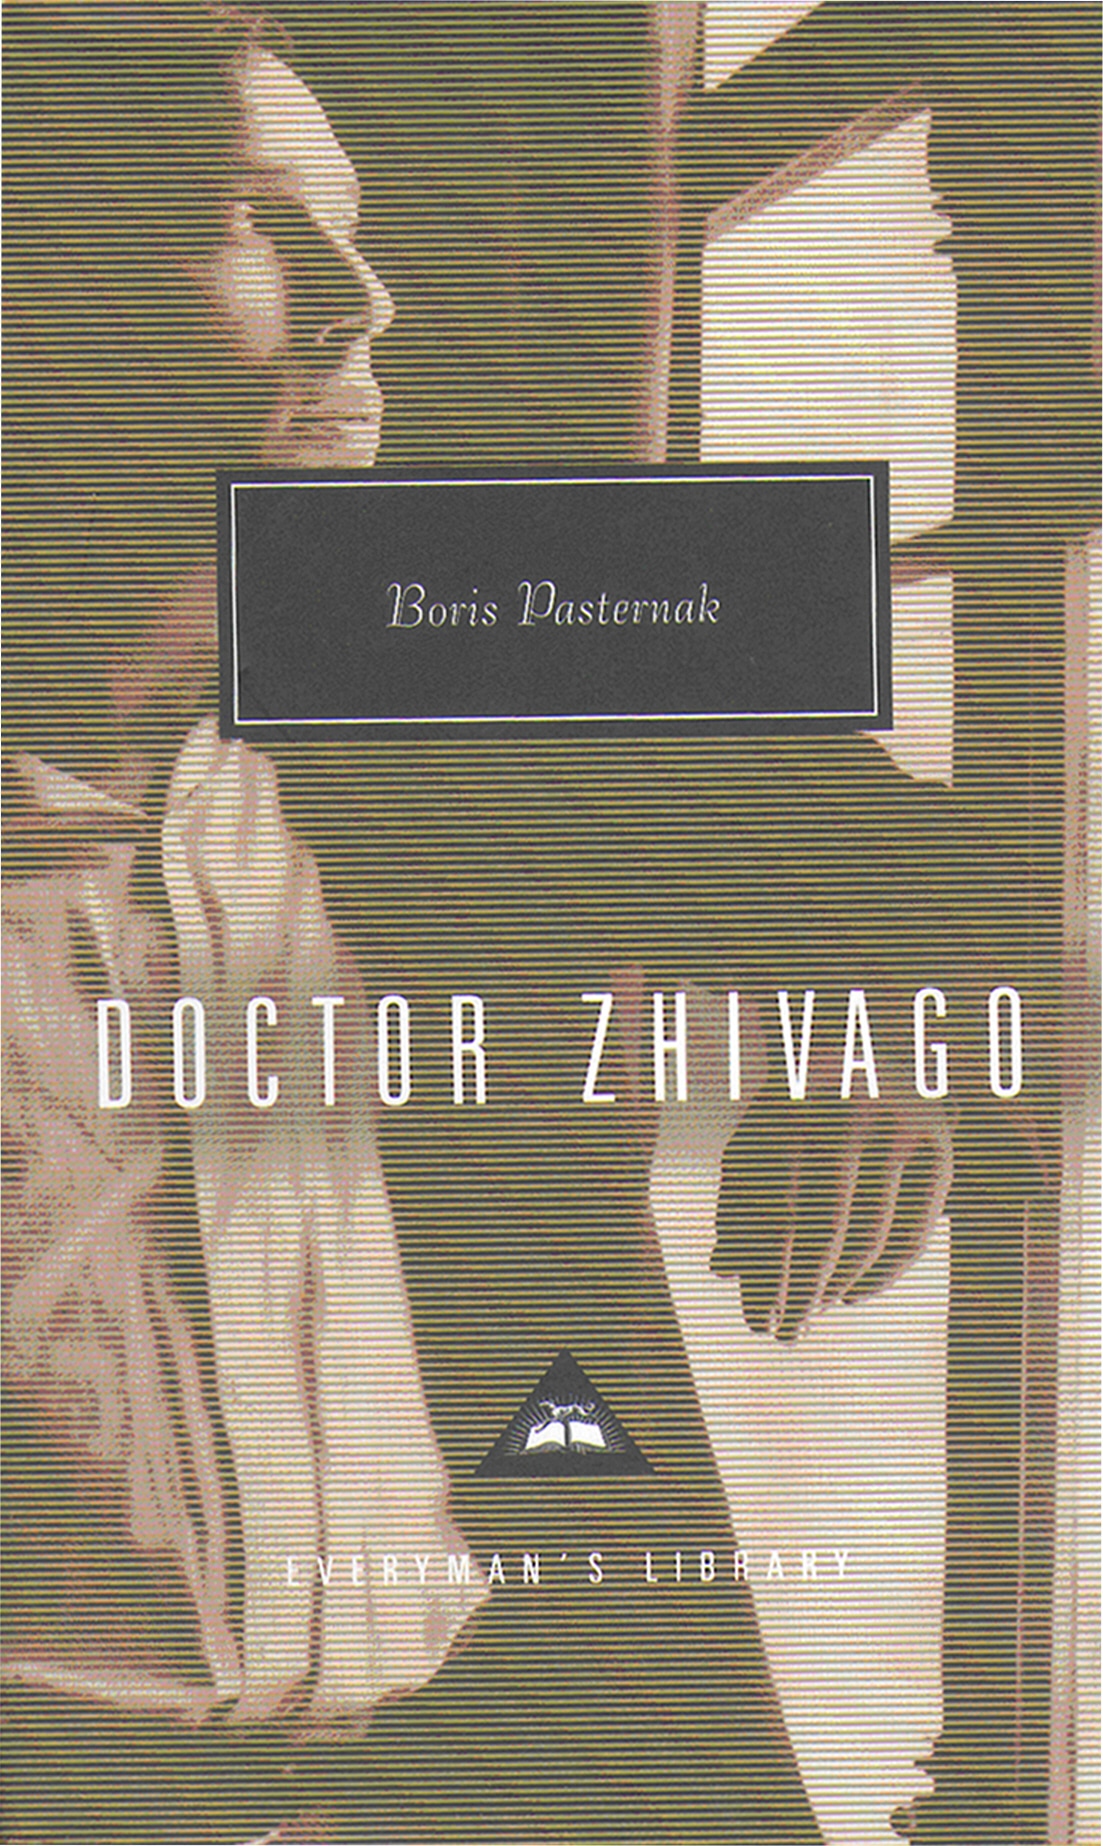 Book “Dr Zhivago” by Boris Pasternak — September 26, 1991